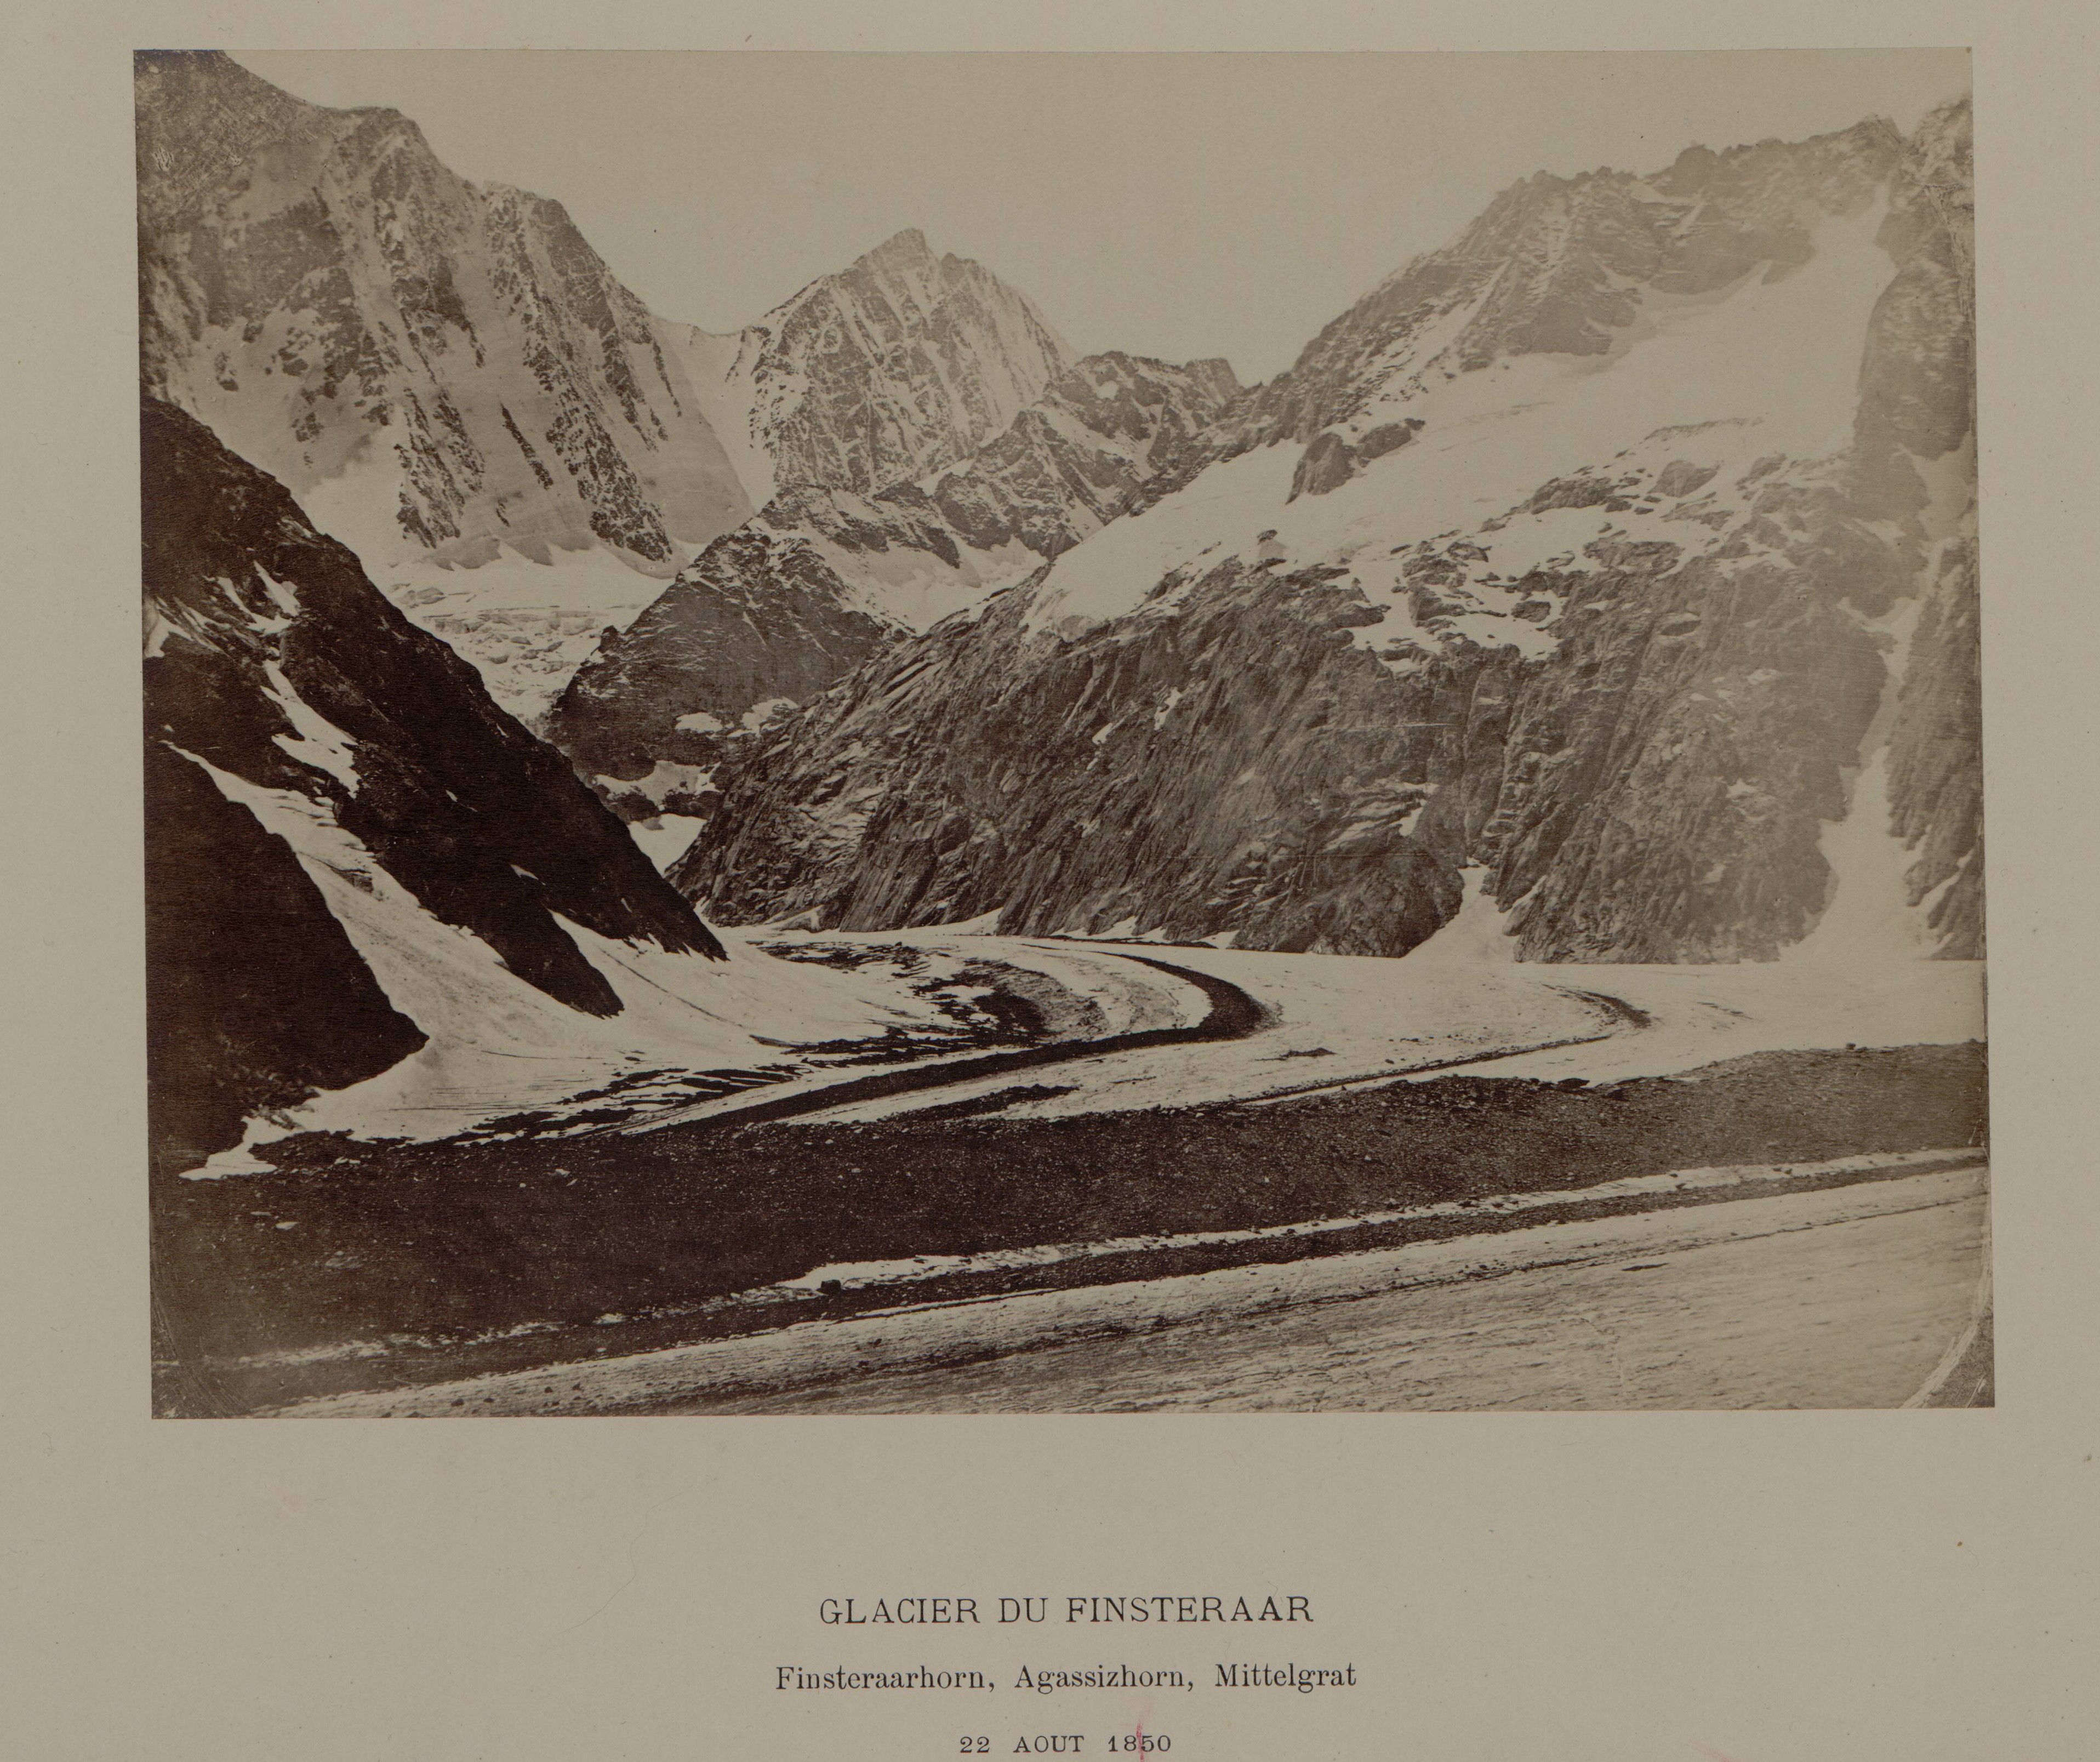 Glacier du Finsteraar, 22 août 1850